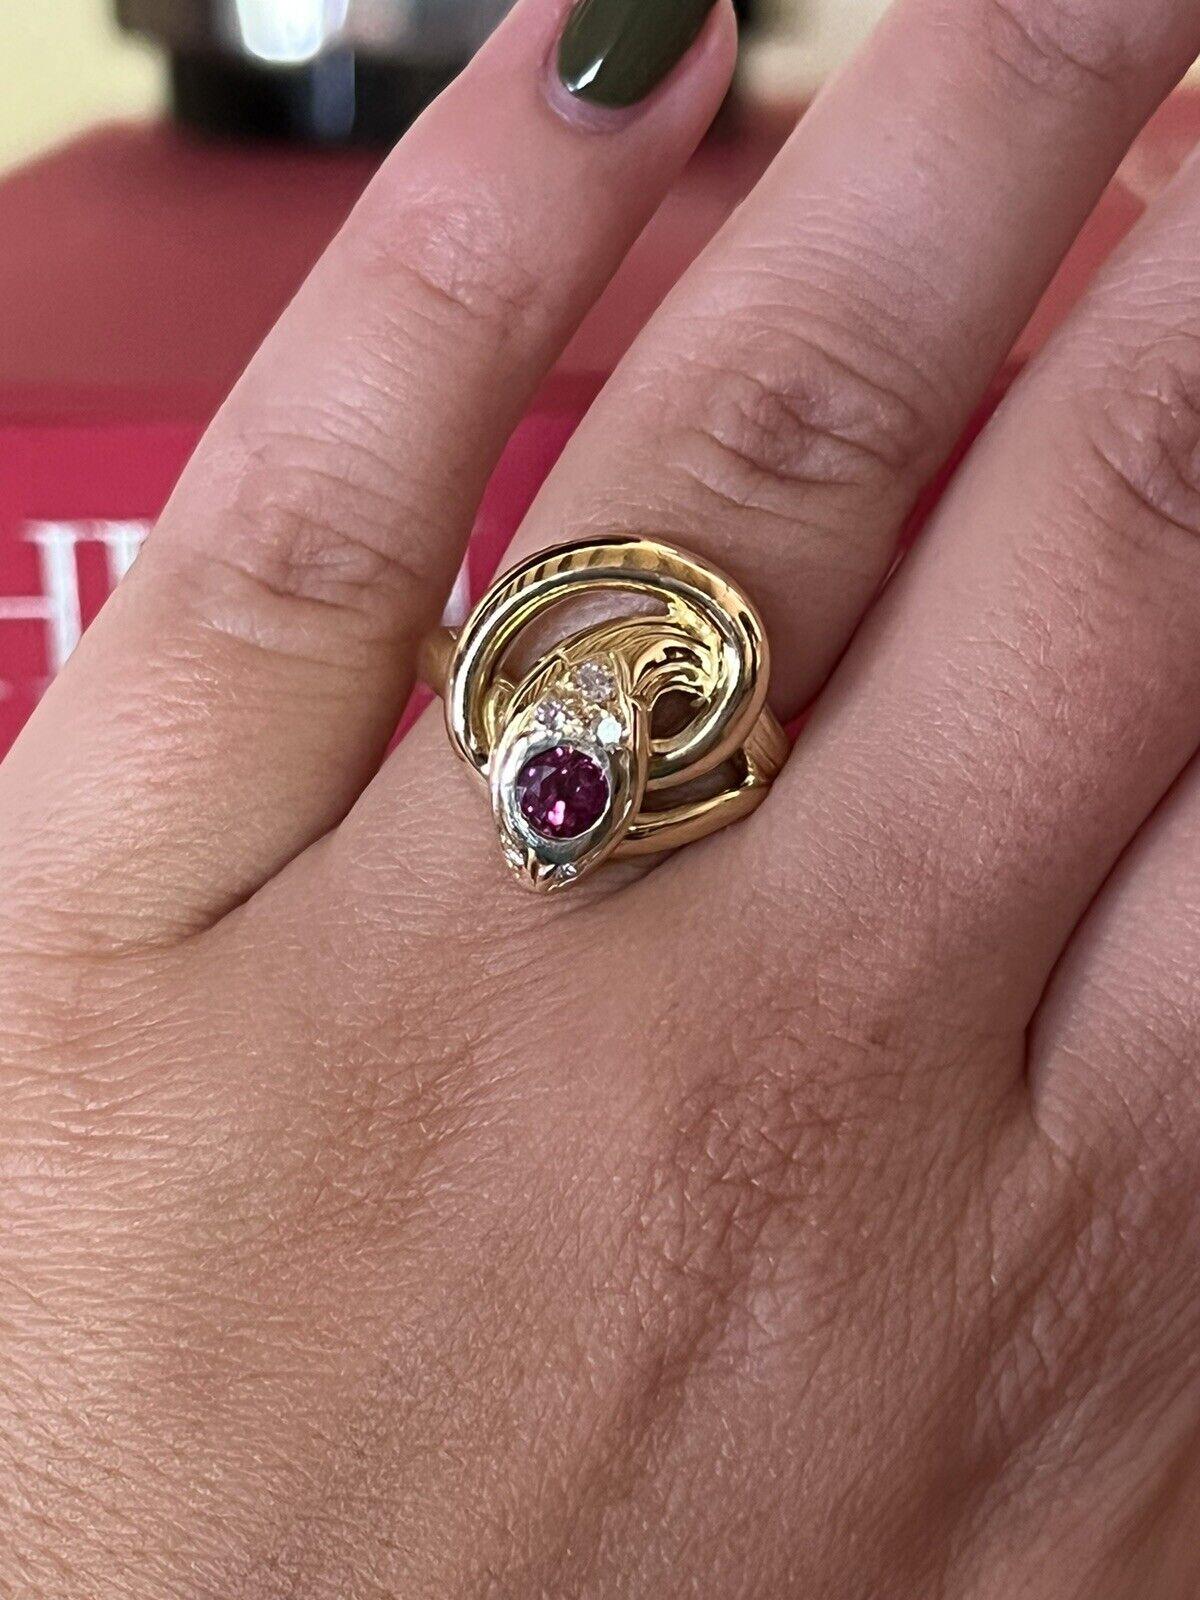 Fred Paris 18k Gelbgold, Diamant & Burma Rubin Schlange Ring Vintage vollständig gestempelt

Hier haben Sie die Chance, einen wunderschönen Designer-Ring mit hohem Sammlerwert zu erwerben.  Wirklich ein tolles Stück zu einem tollen Preis! 

Das